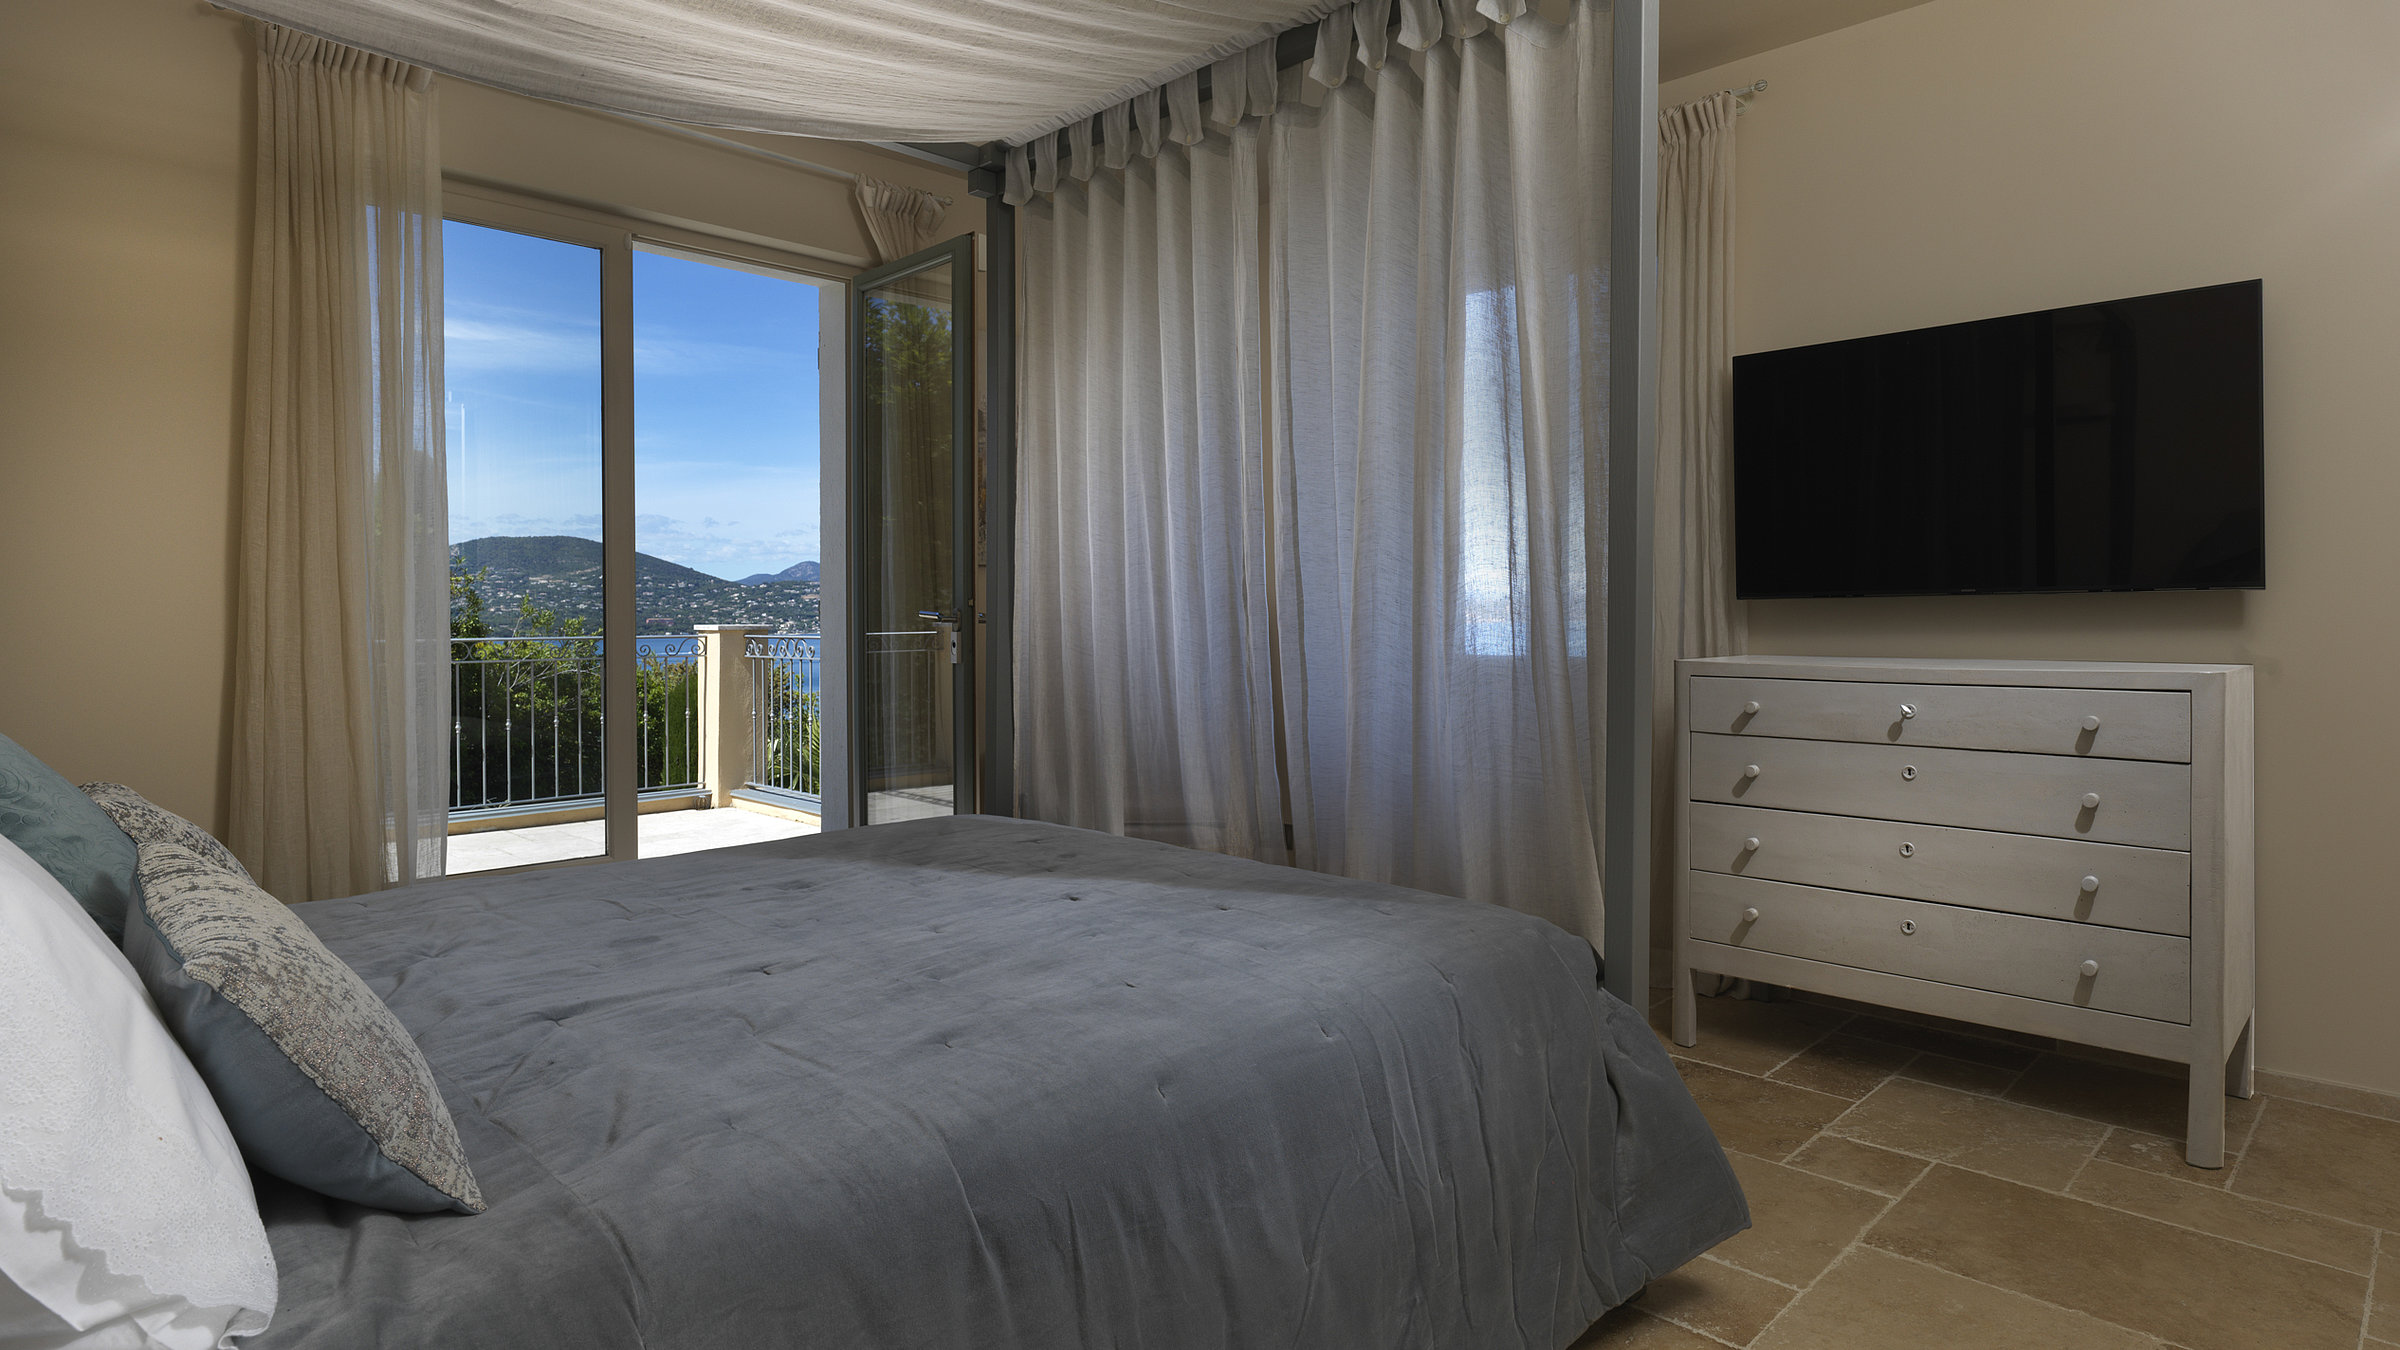 Althoff Belrose Villa Rental in St. Tropez Beau Rivage Schlafzimmer mit einem wunderschönen Blick im Sommer